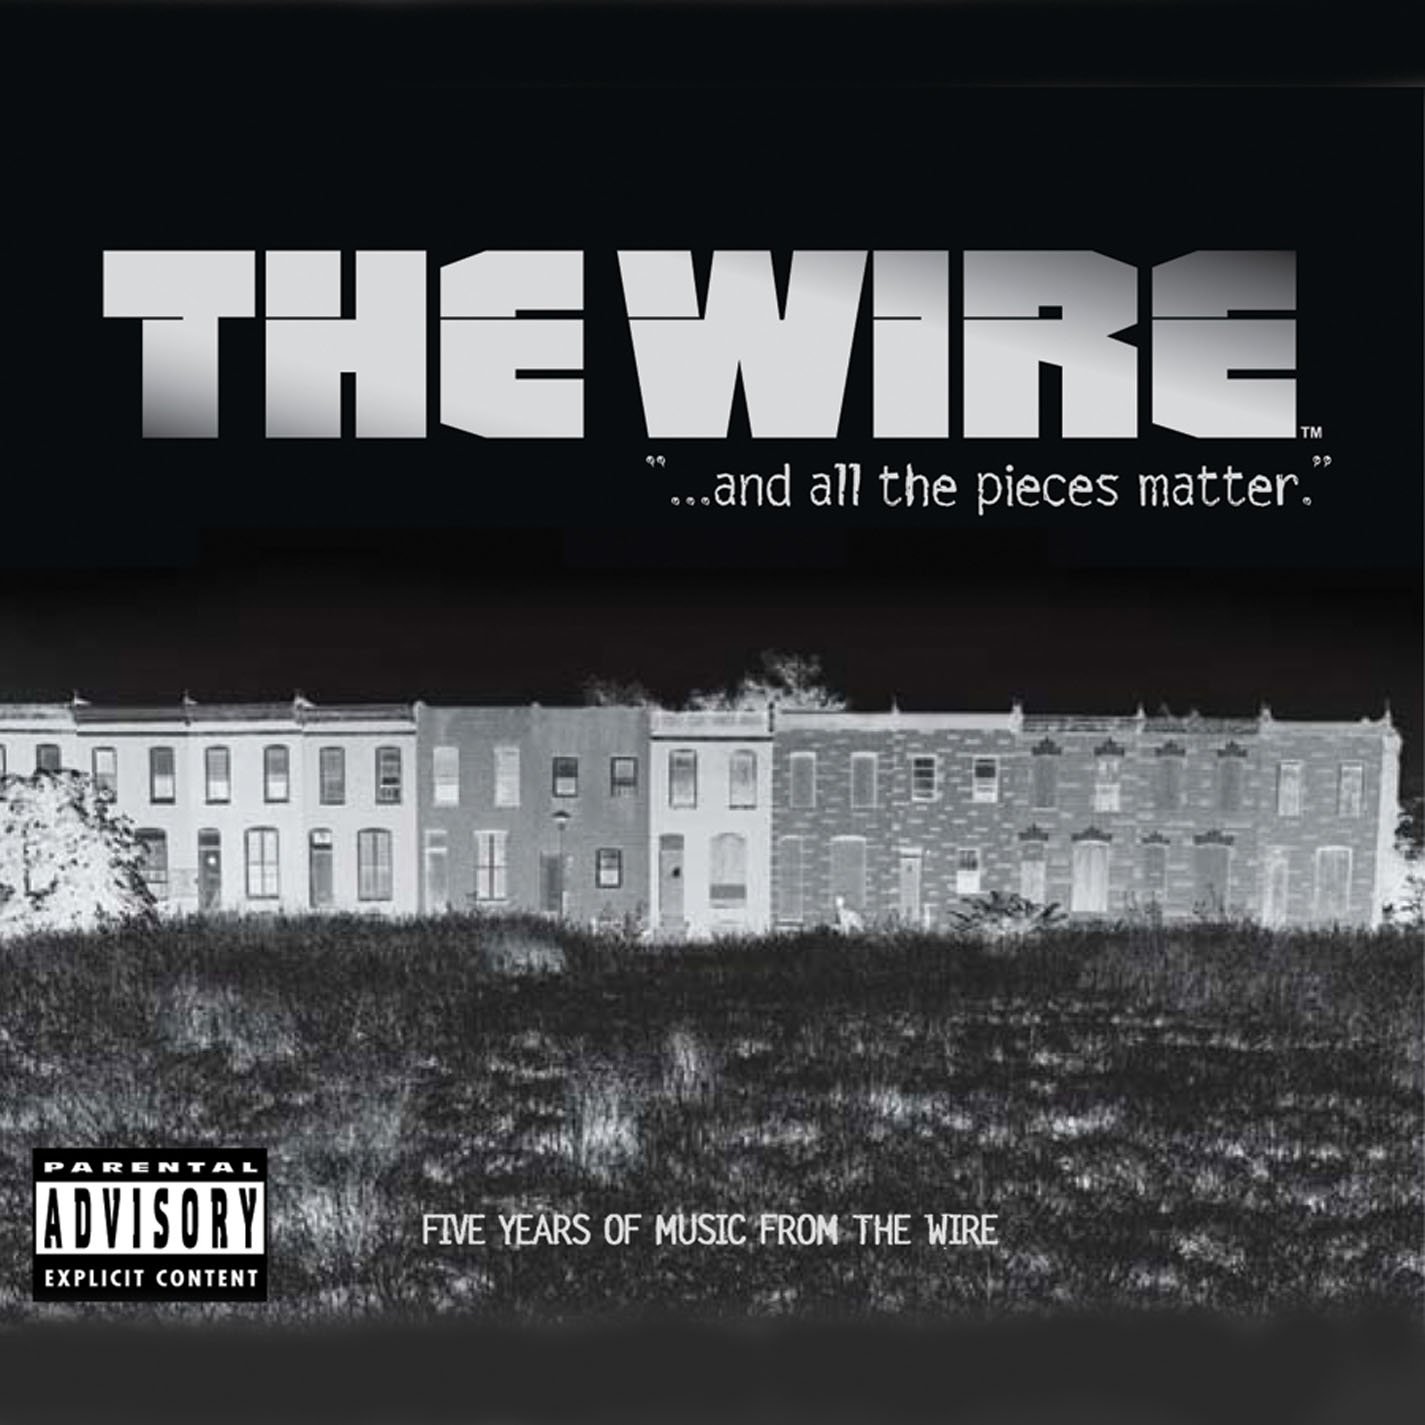 تکینیو techinio The wire - Sountrack- موسیقی متن - فیلم - سریال